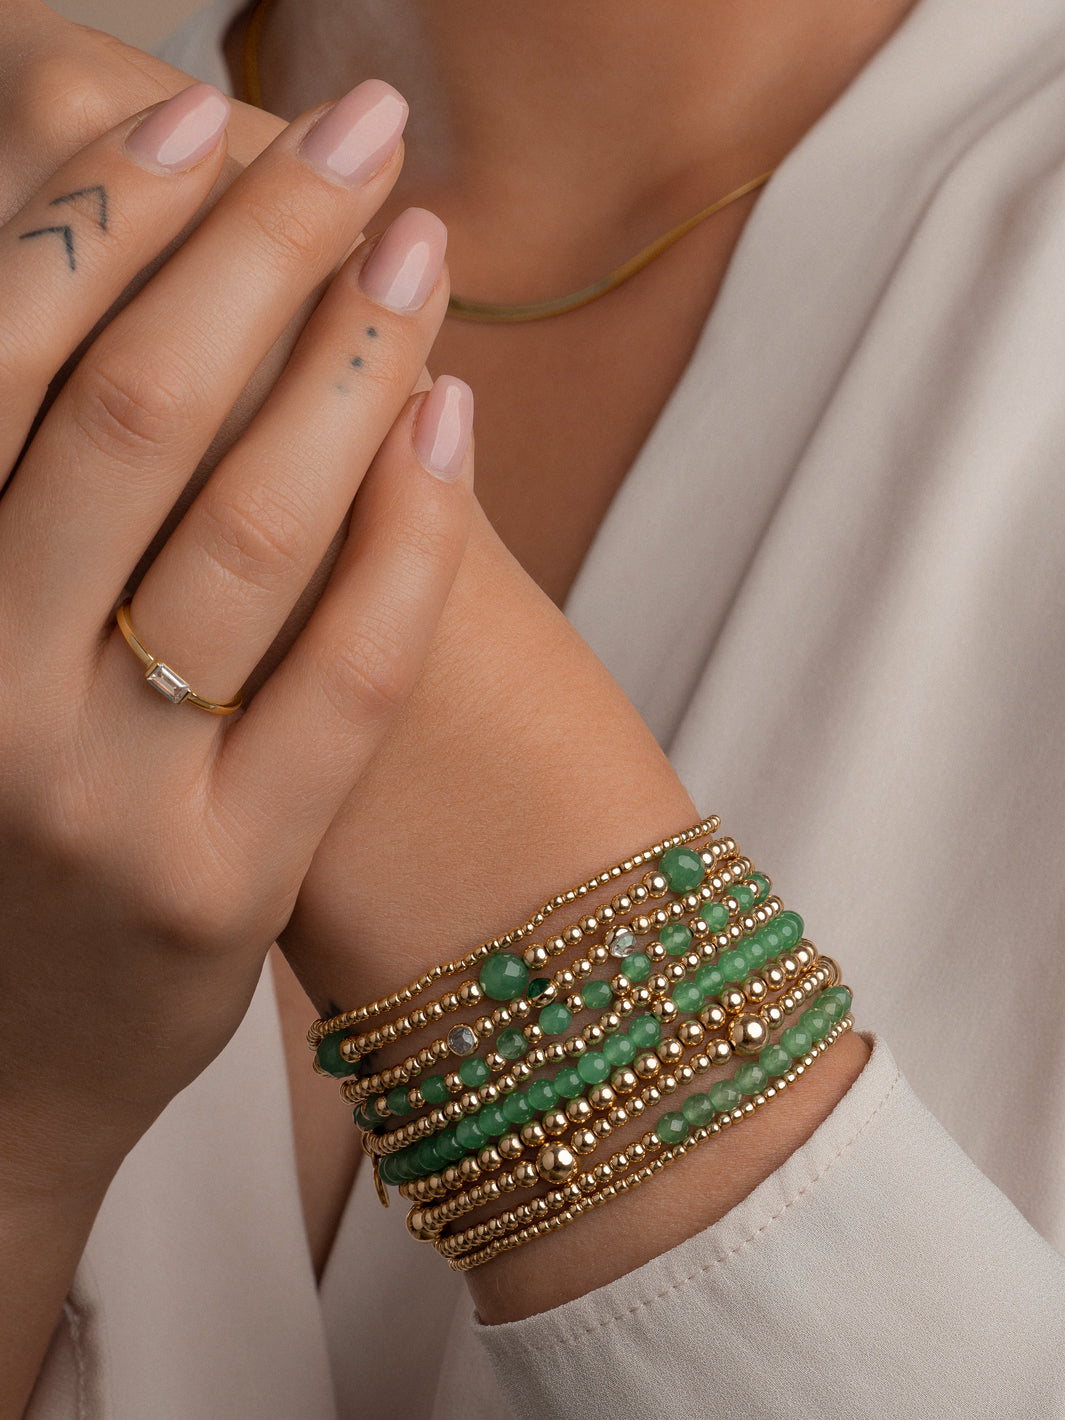 armband van Sparkling Jewels, versierd met glinsterende zirkonia steentjes en goudkleurige kralen